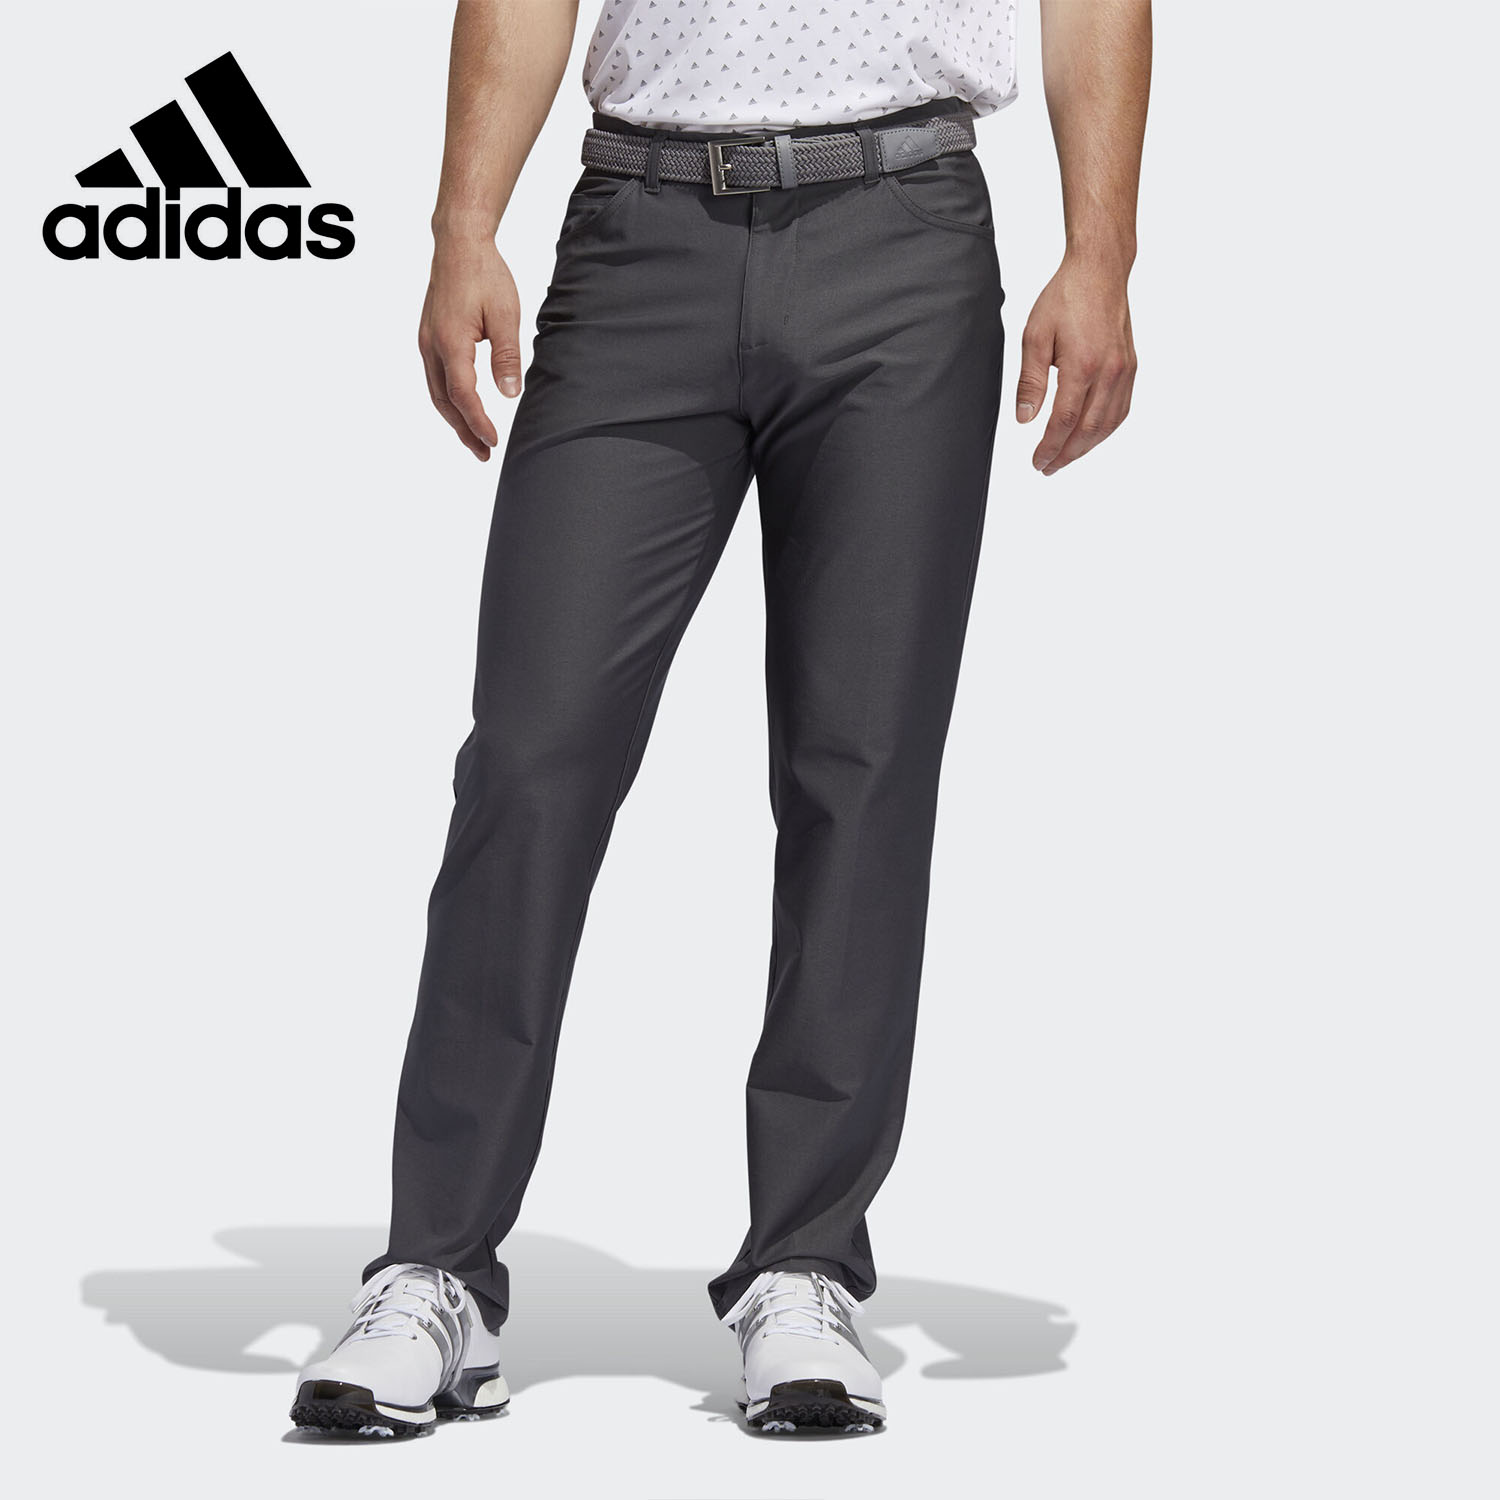 Adidas/阿迪达斯正品男子高尔夫修身时尚舒适运动长裤 FJ9859